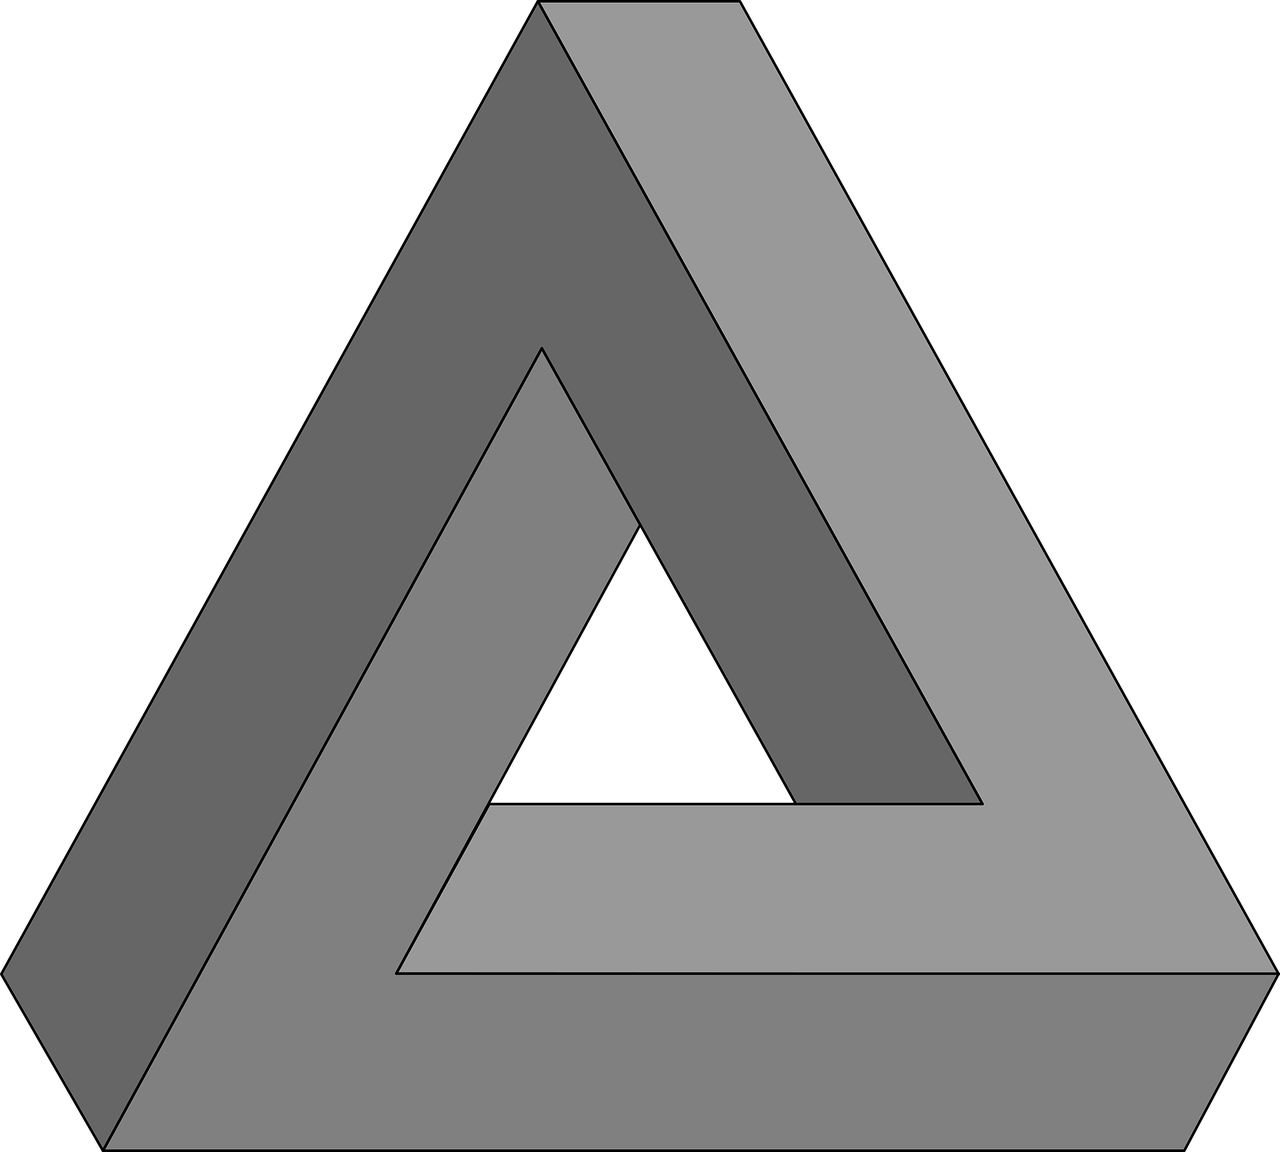 Случайная геометрическая фигура. Невозможный треугольник Пенроуза. Оптические иллюзии треугольник Пенроуза. Роджер Пенроуз невозможный треугольник. Иллюзия невозможный треугольник Пенроуза.